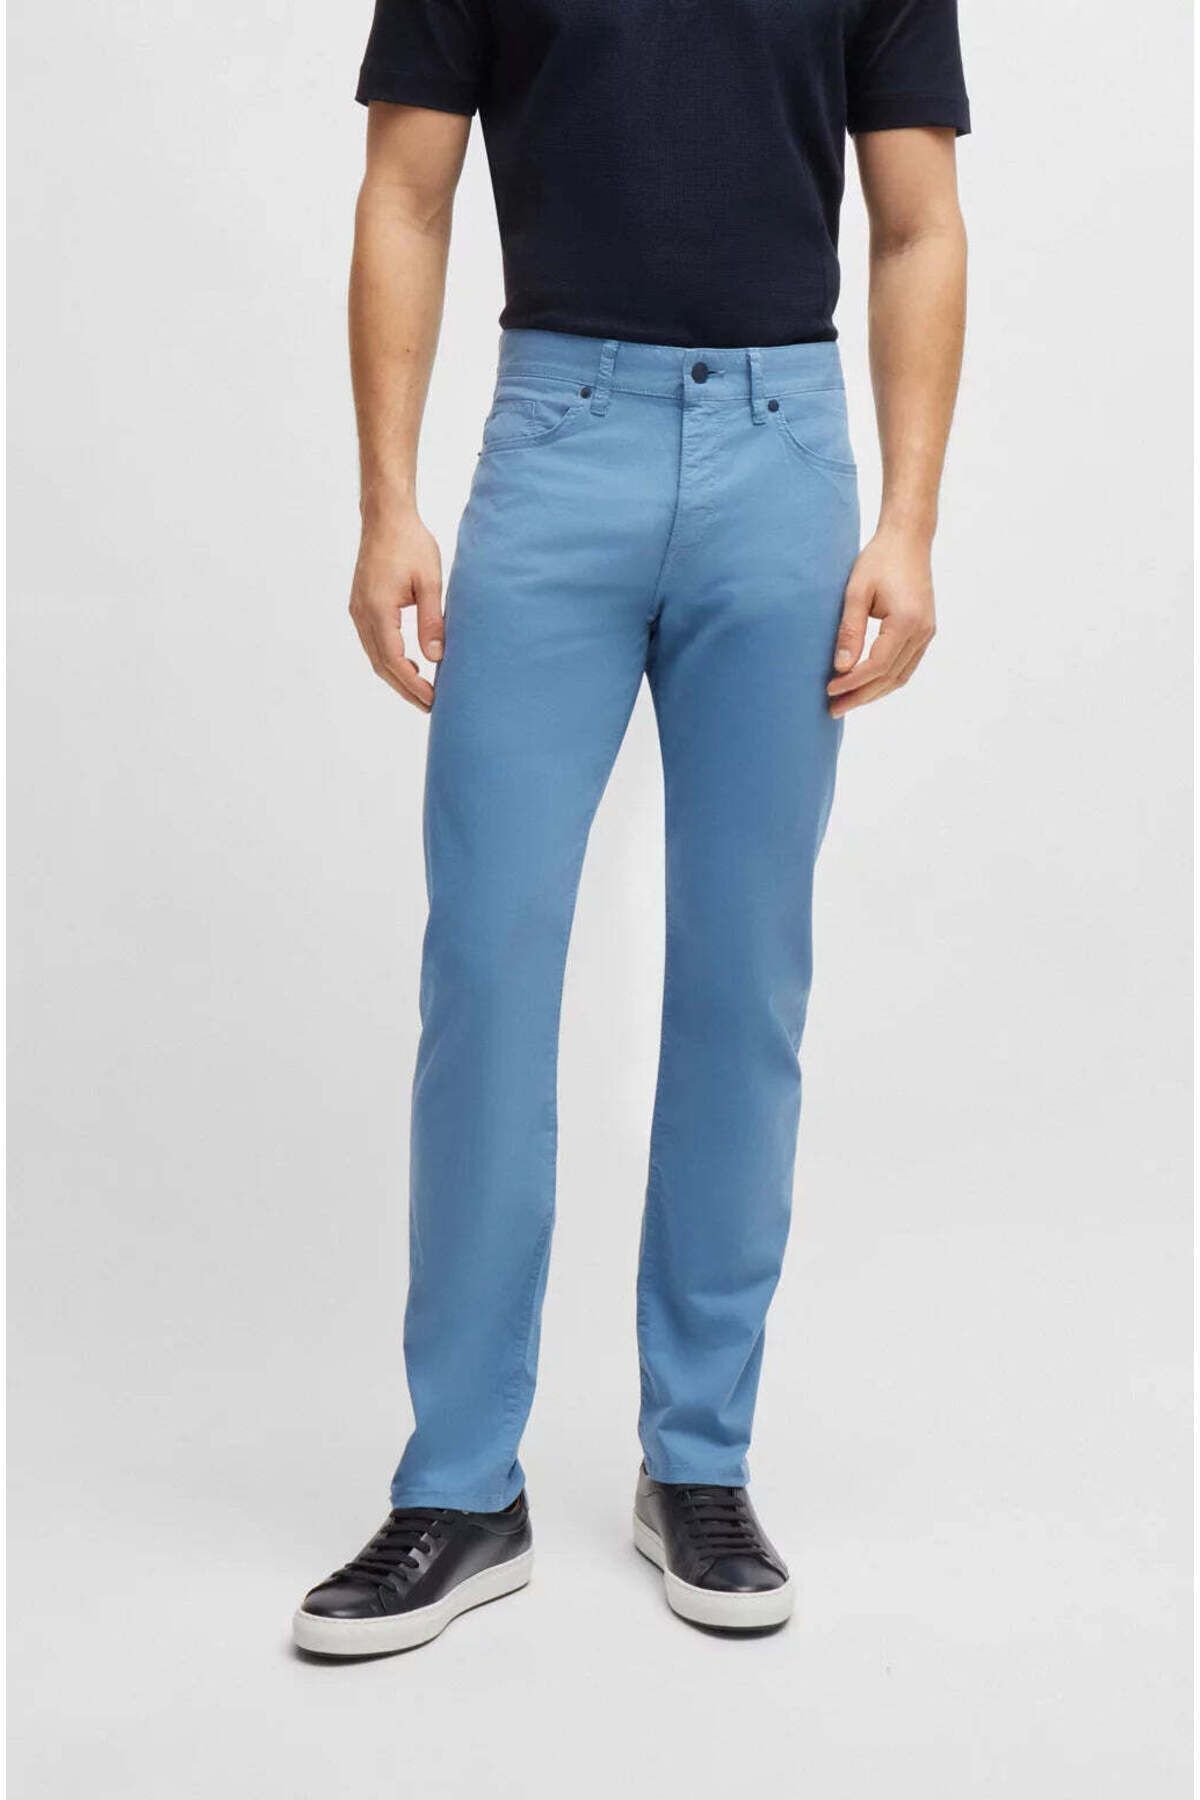 BOSS Erkek Denim Normal Belli Düz Model Günlük Kullanım Mavi1 Jeans 50505445-450